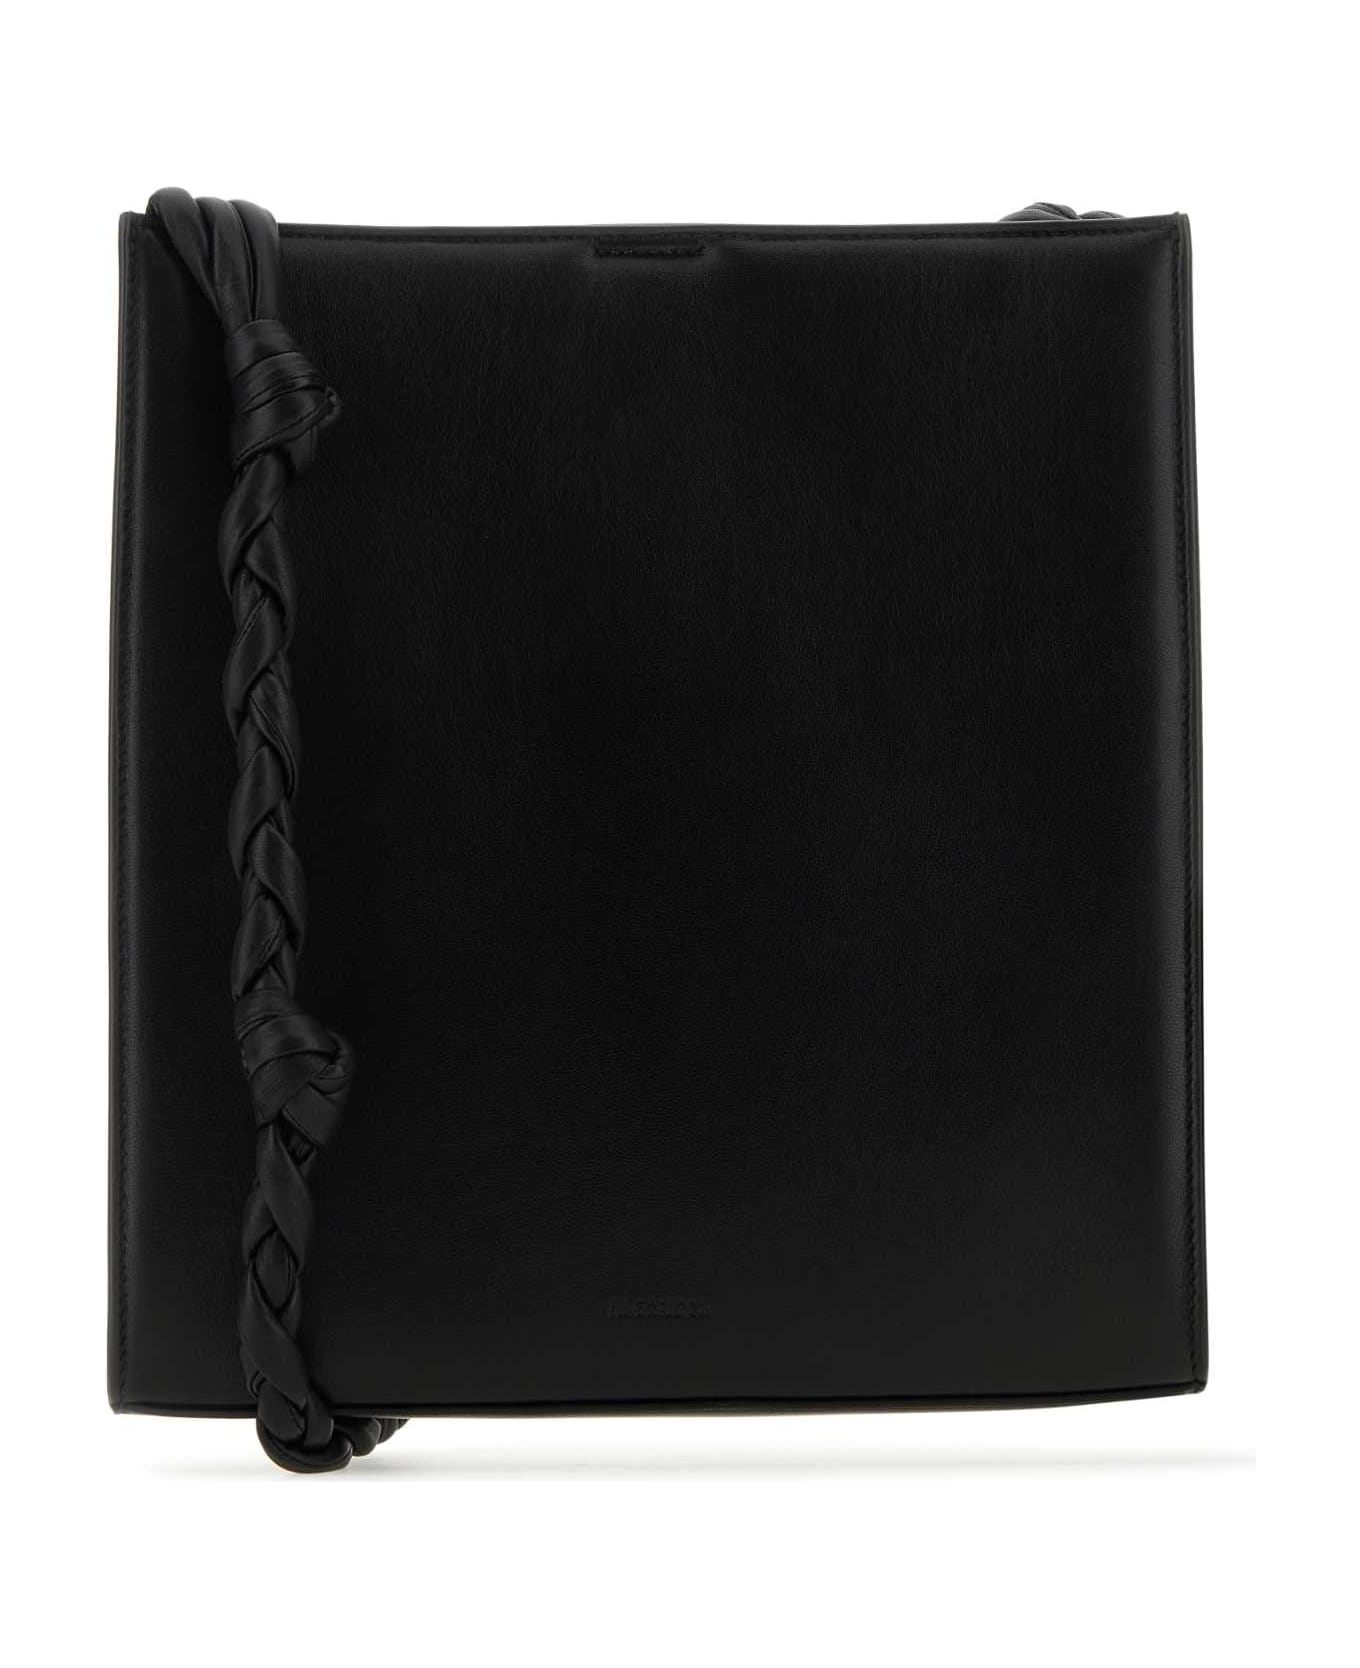 Jil Sander Black Leather Medium Tangle Shoulder Bag - 001